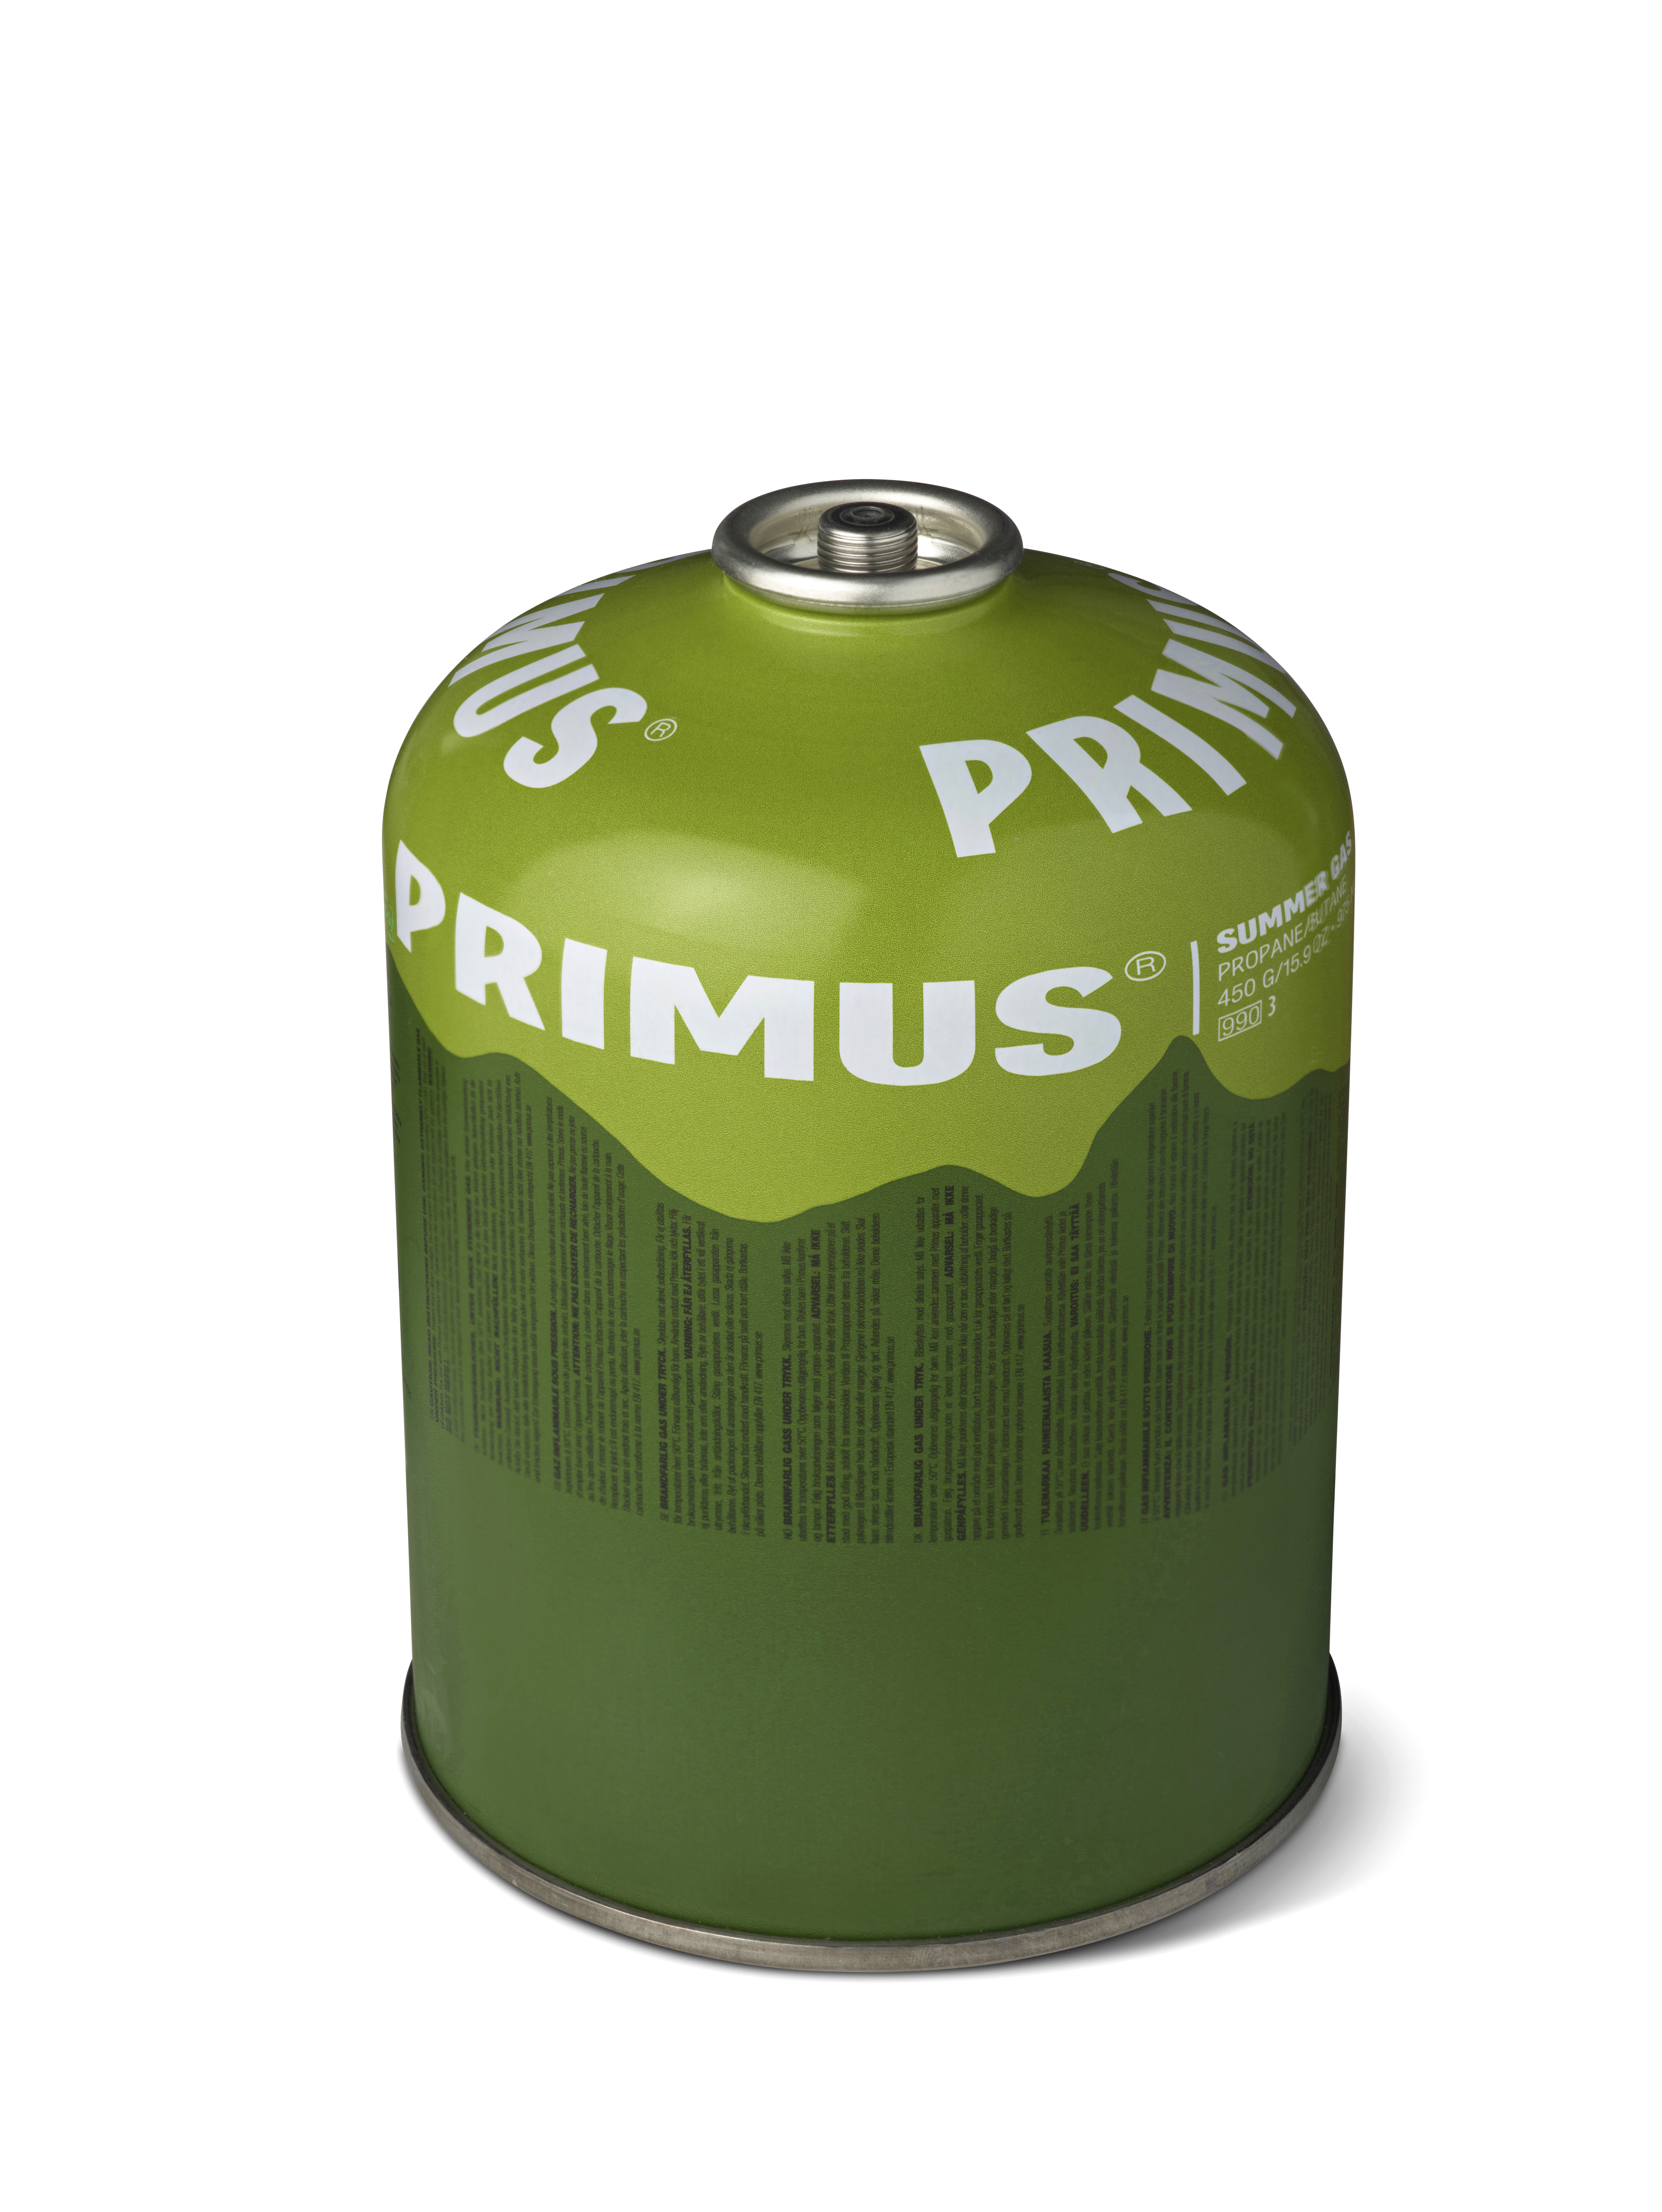 Primus 'Summer Gas' Schraubkartusche Sommergas